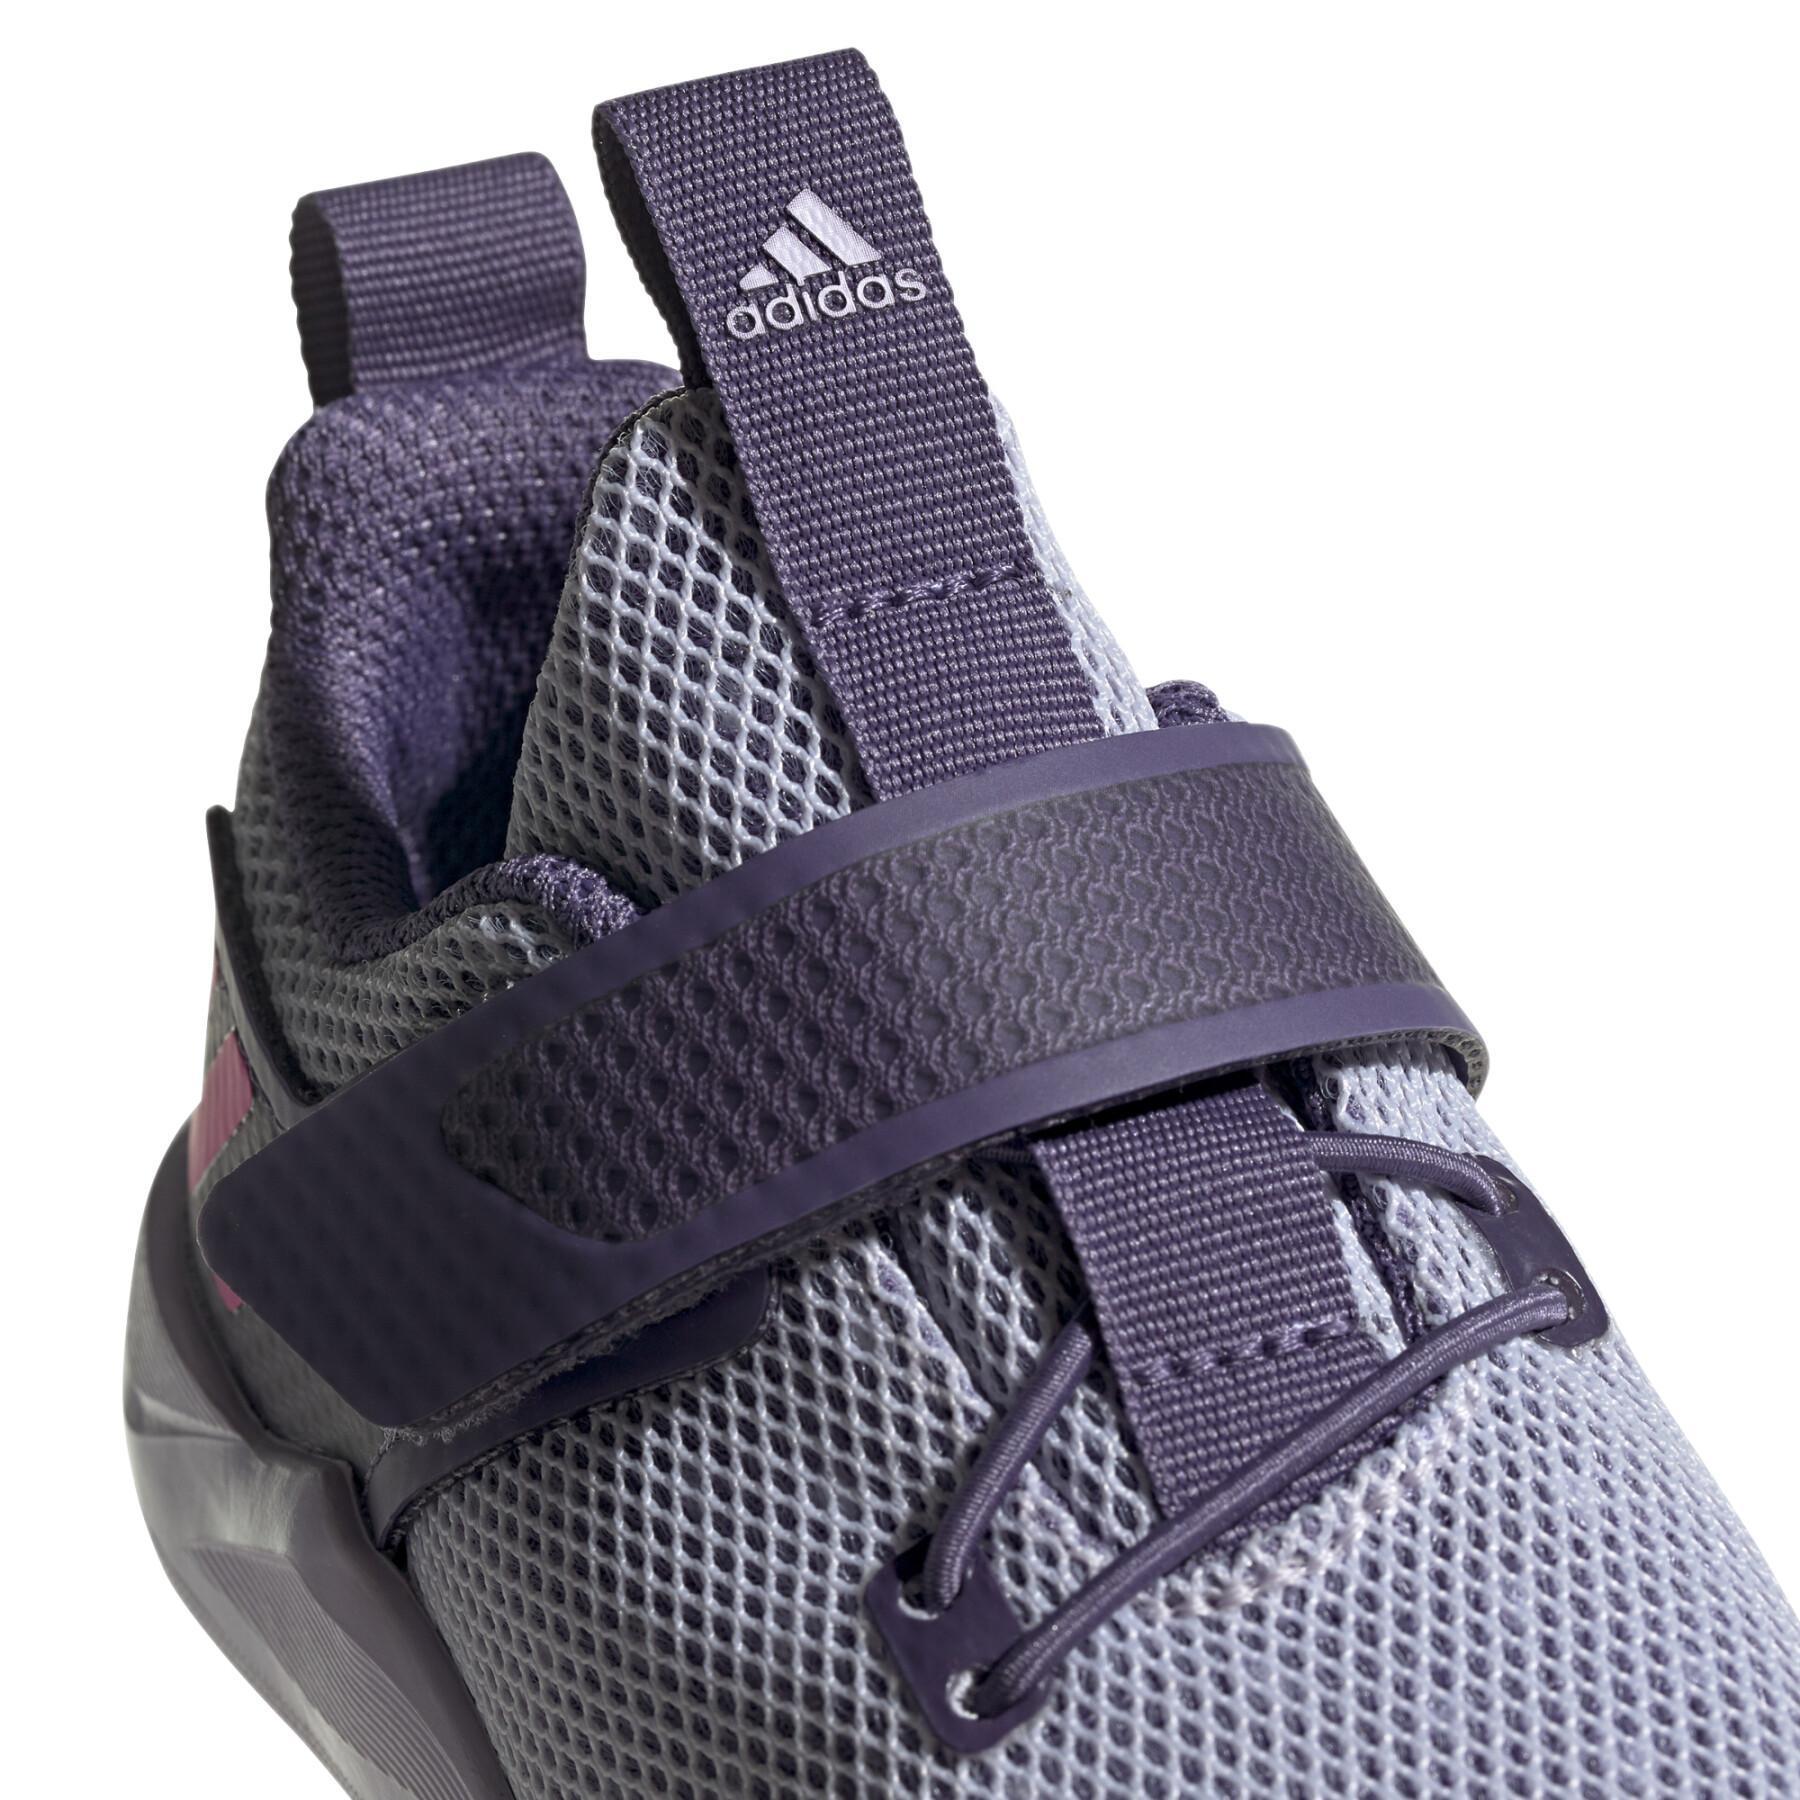 Children's sneakers adidas RapidaFlex